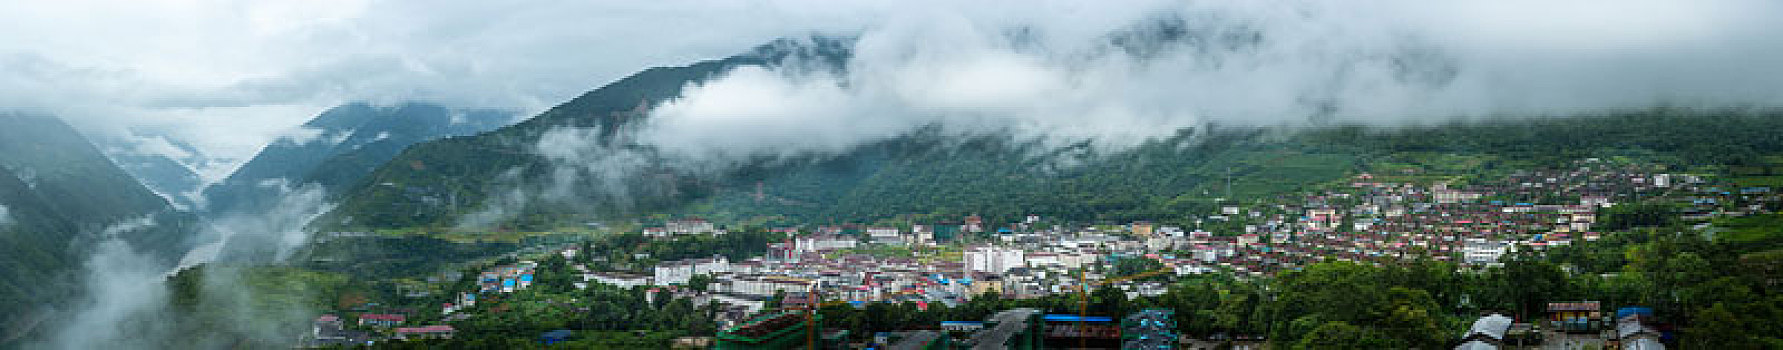 西藏墨脱县城全景图